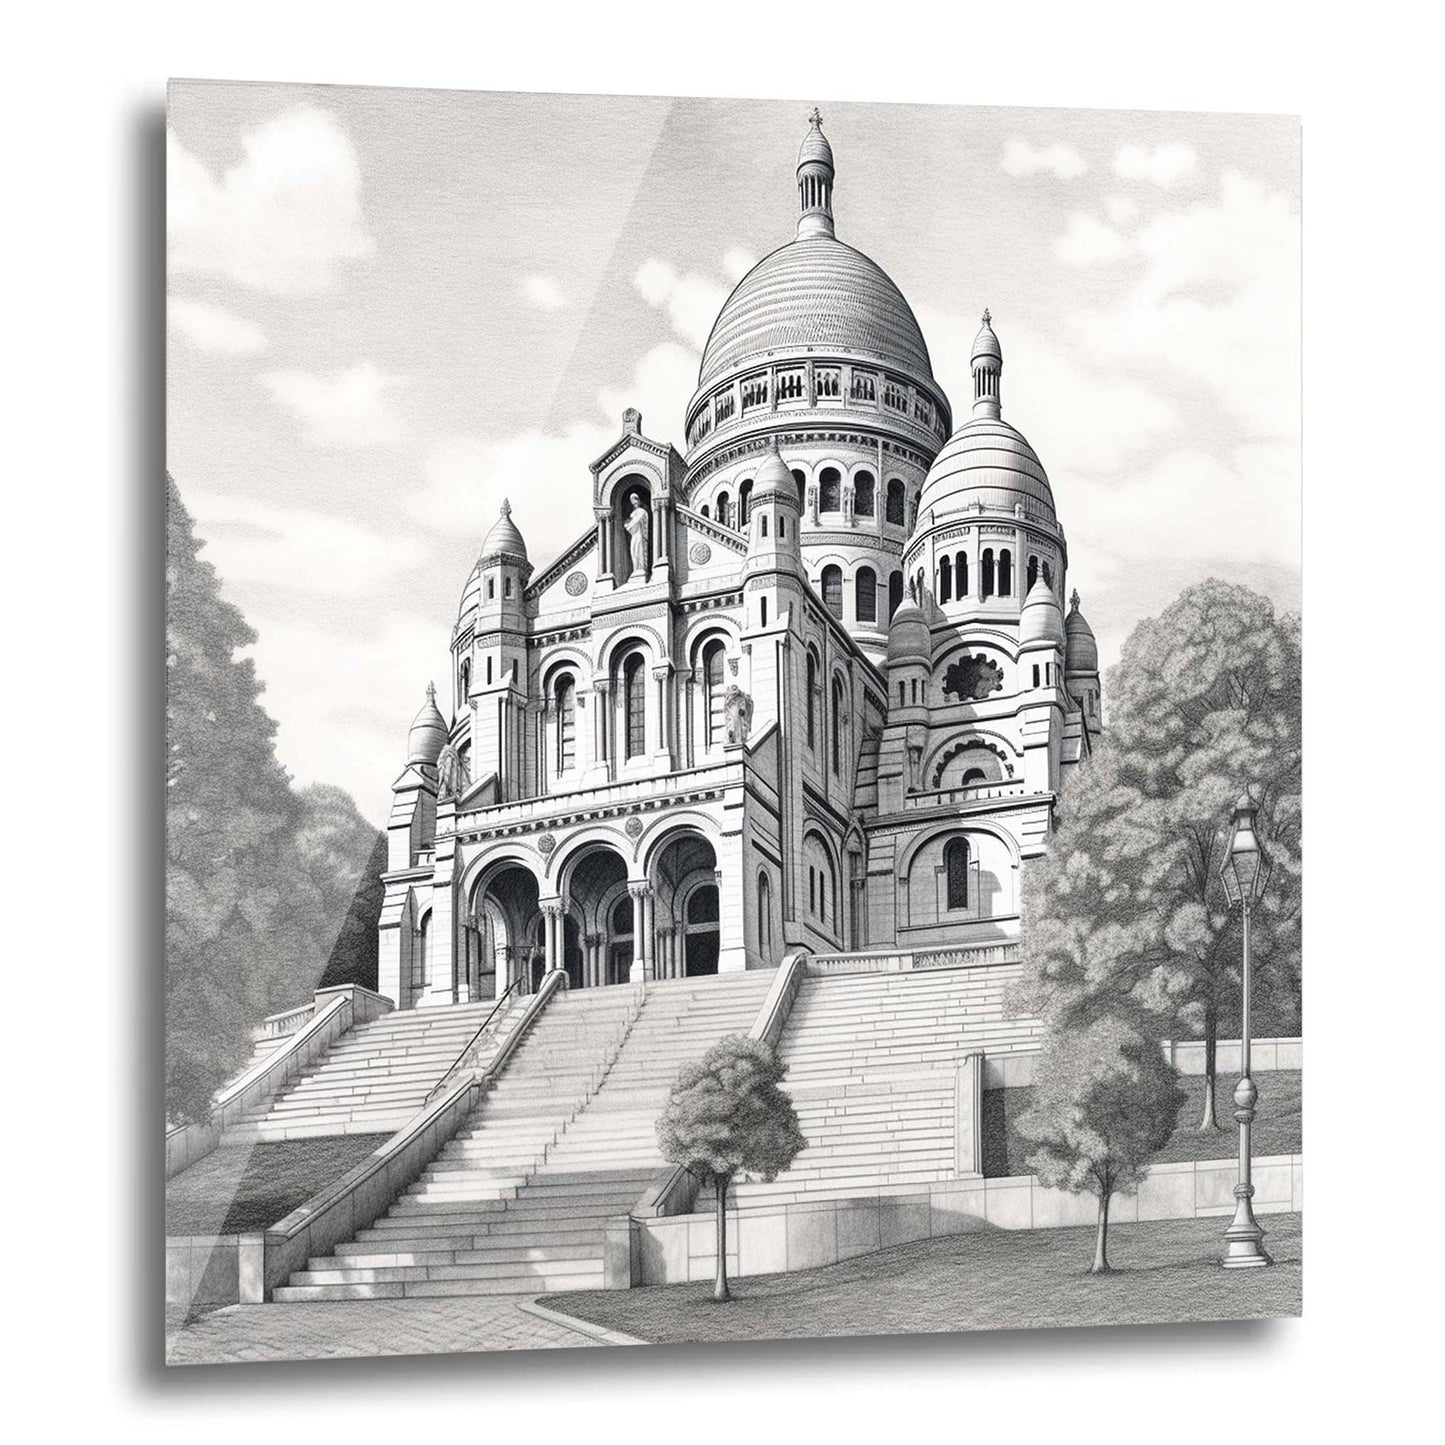 Paris Sacre Coeur - Wandbild in der Stilrichtung einer Zeichnung